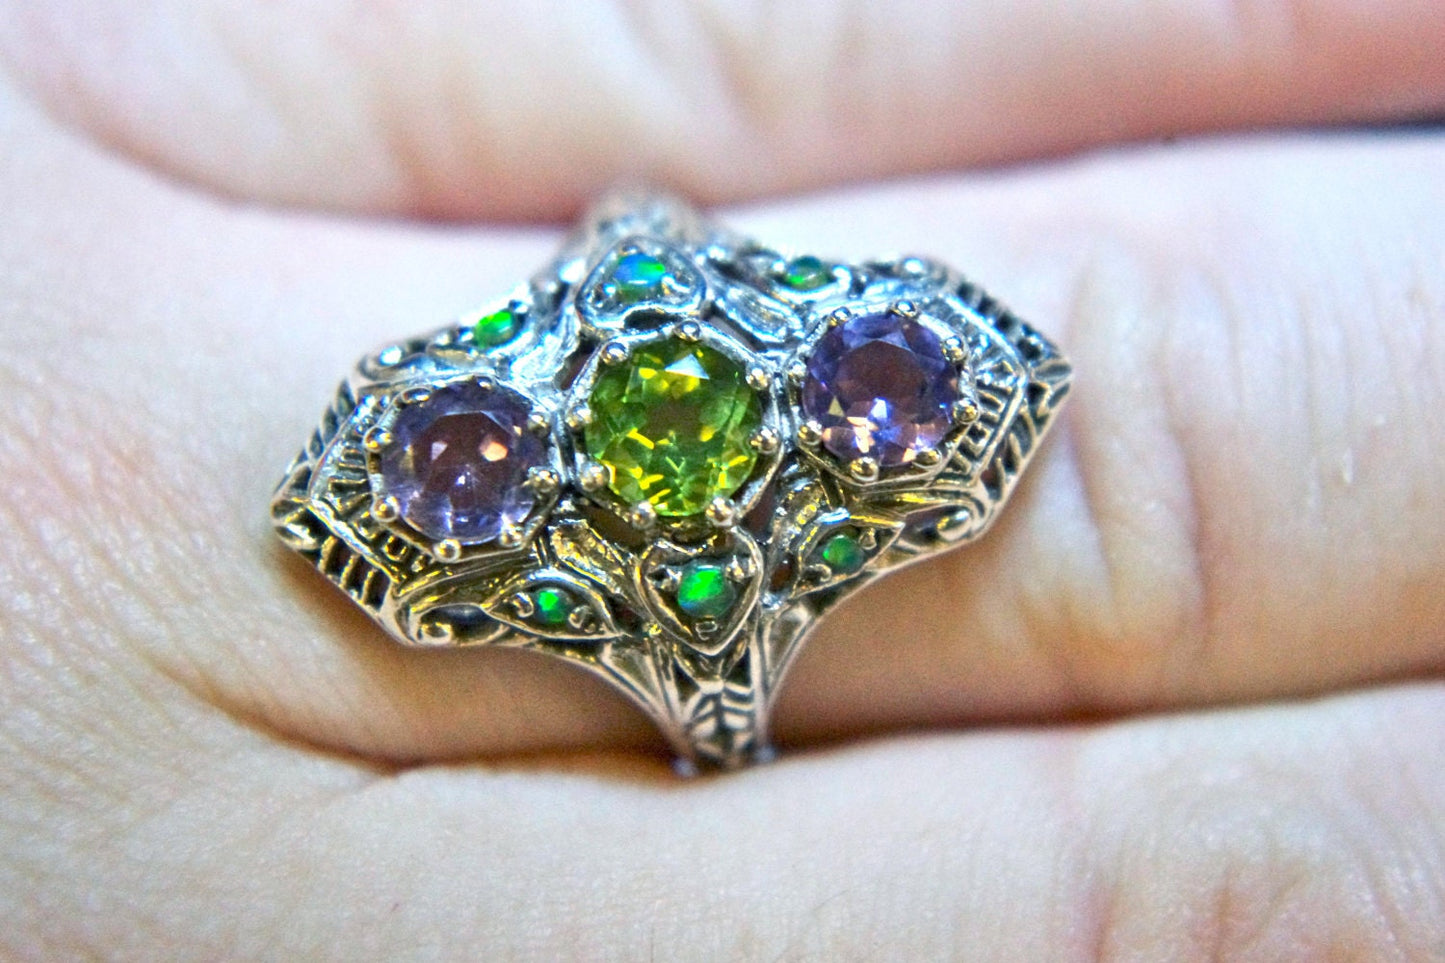 Victorian Revival Sterling Amethyst, Peridot & Green Fire Opal Long Edwardian Filigree Ring